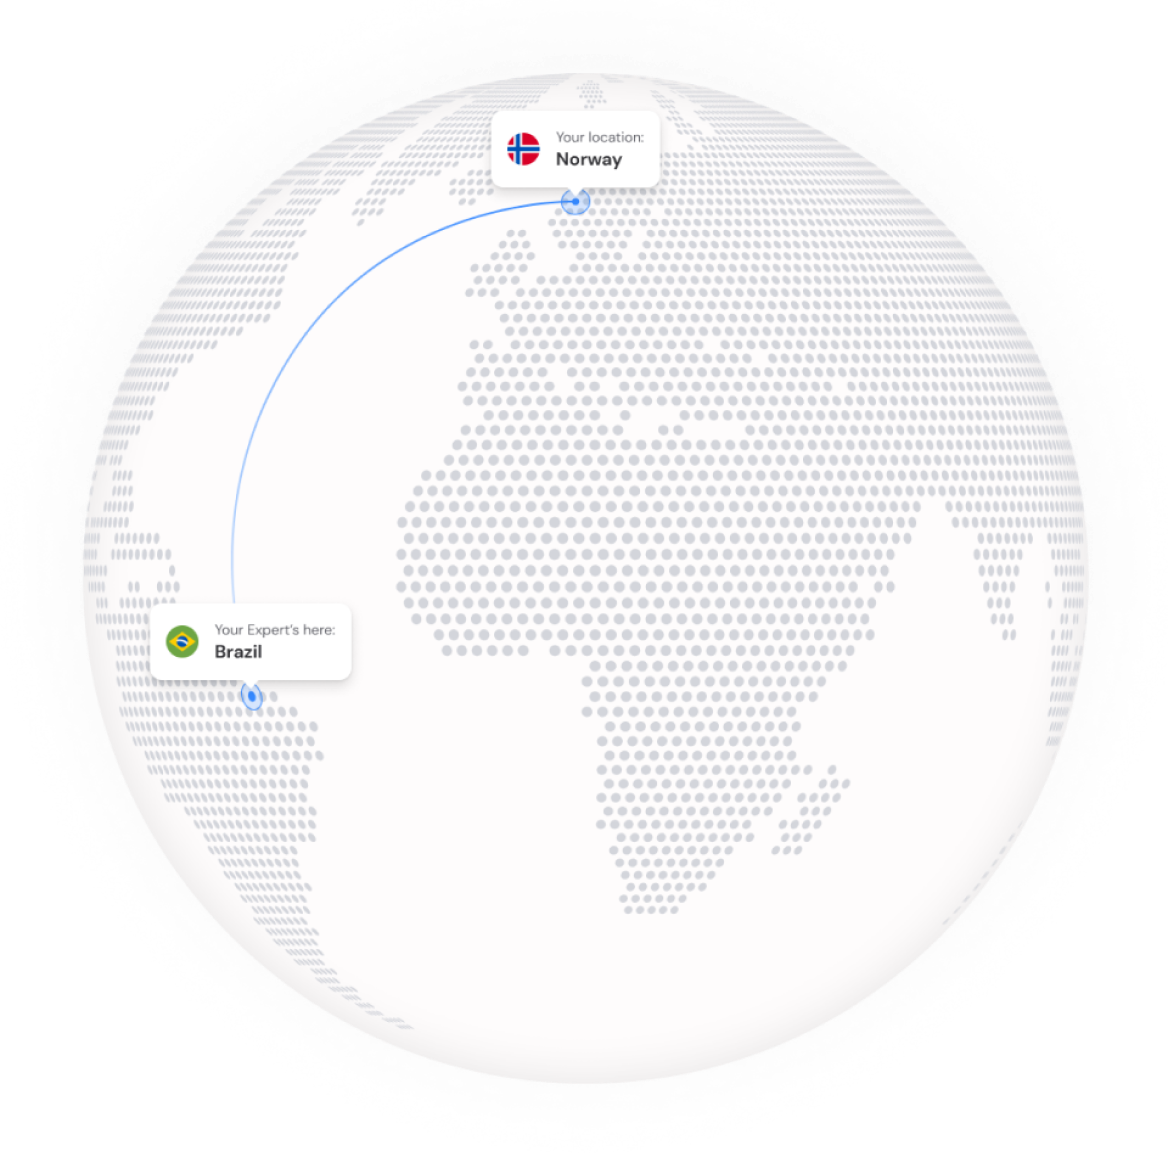 Visualisierung globaler Konnektivität und Remote Support